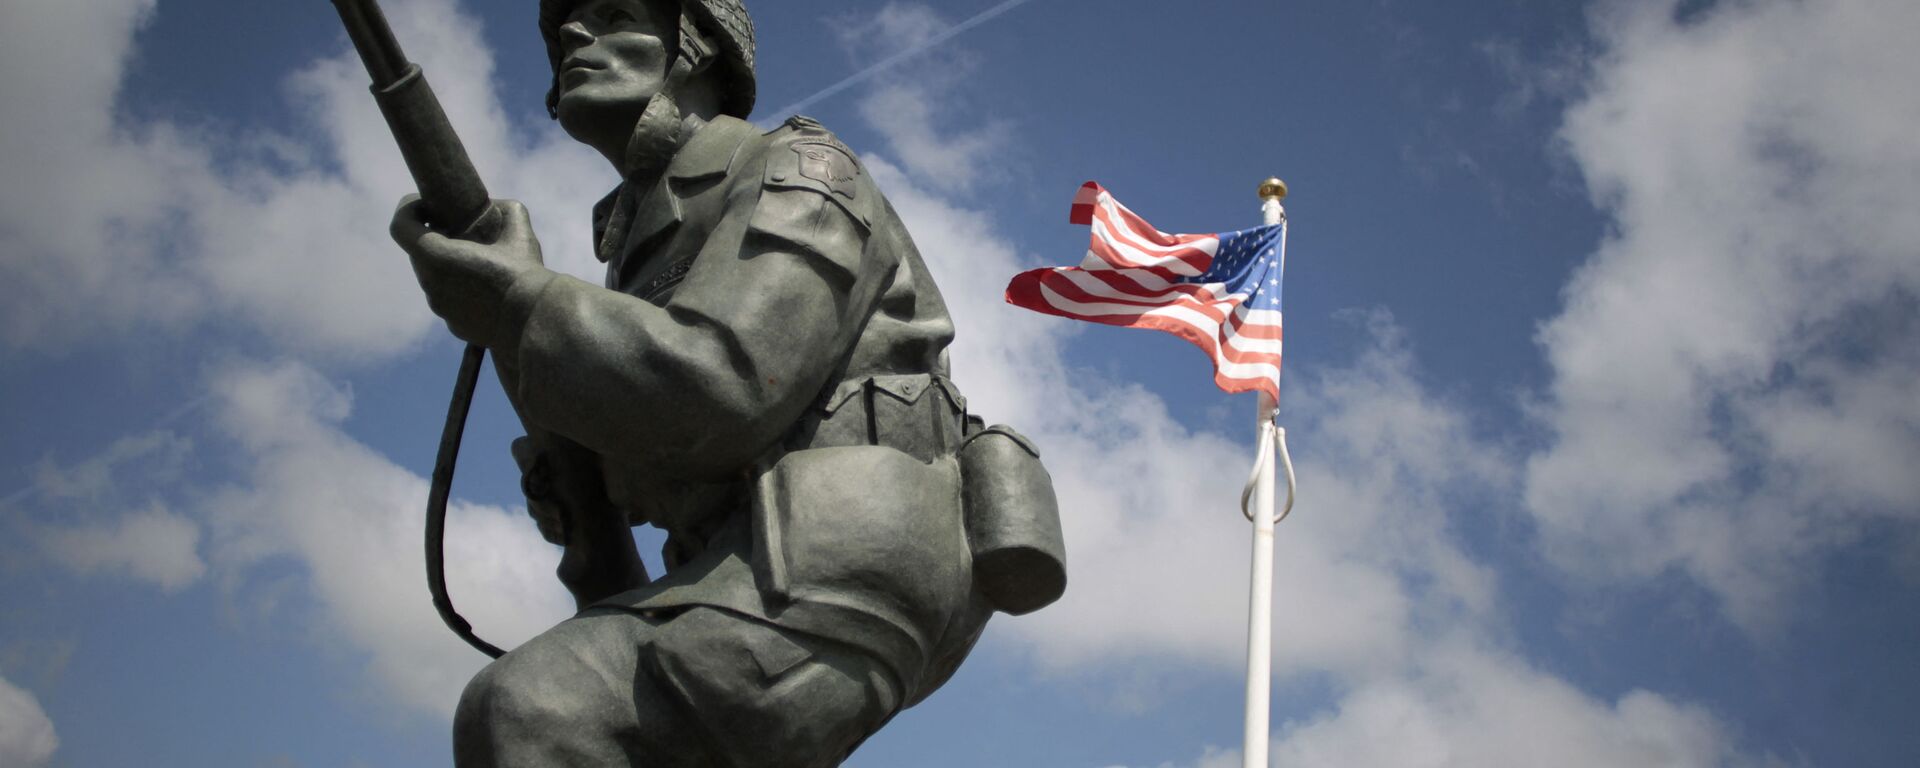 На этом снимке, сделанном 31 мая 2014 года, изображена статуя американского солдата рядом с американским флагом у Мемориала Брюшевиля на северо-западе Франции. - Sputnik Абхазия, 1920, 11.09.2021